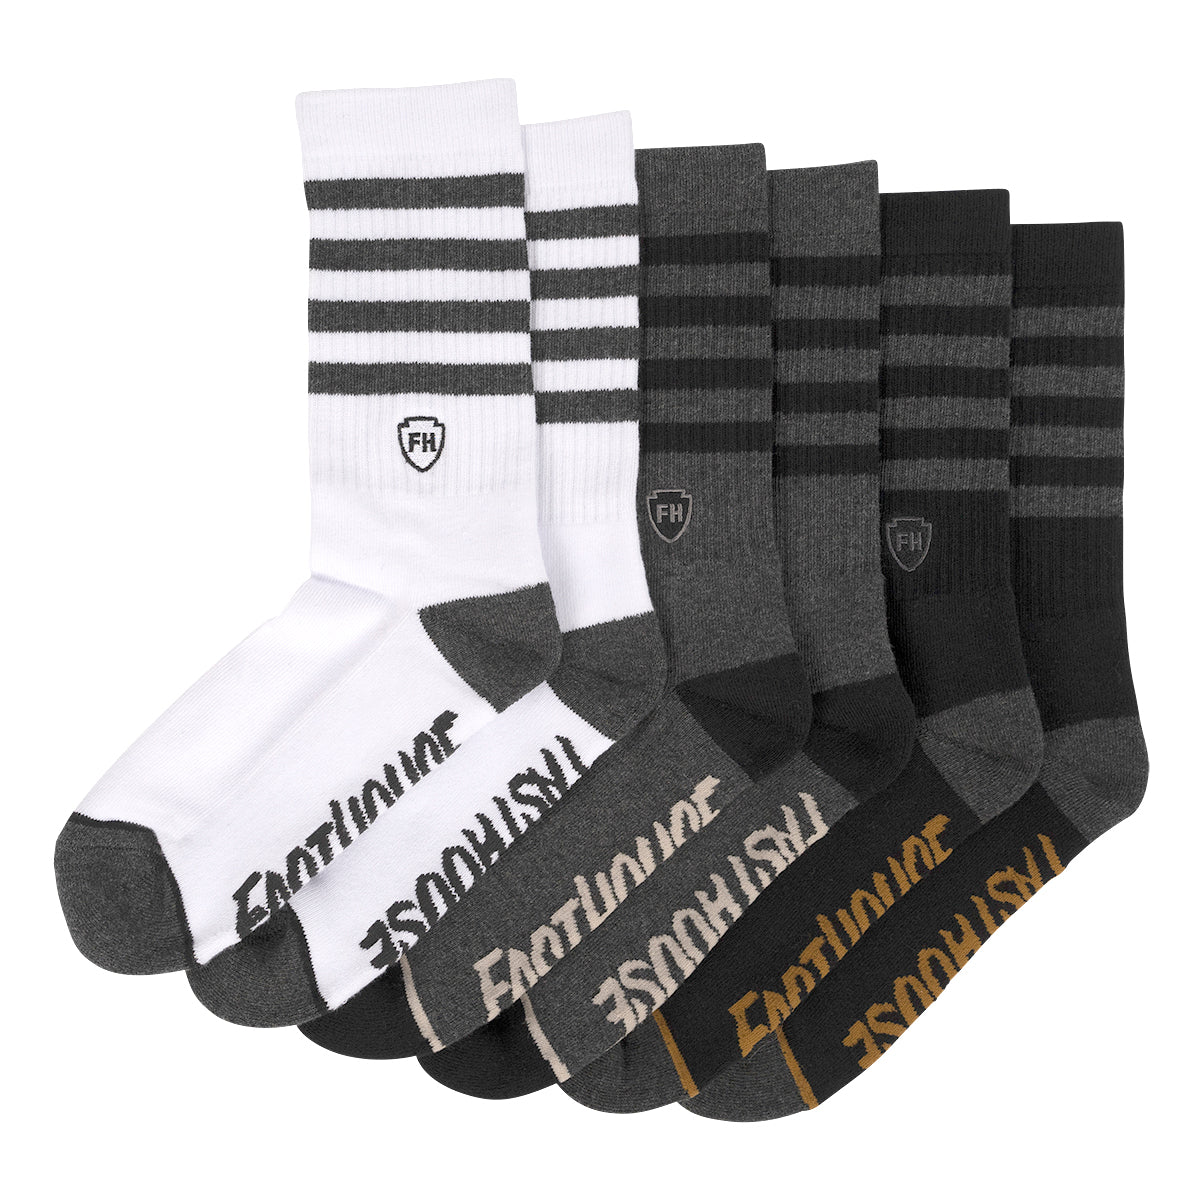 Striped Crew Socks, 3 Pack - Black/White